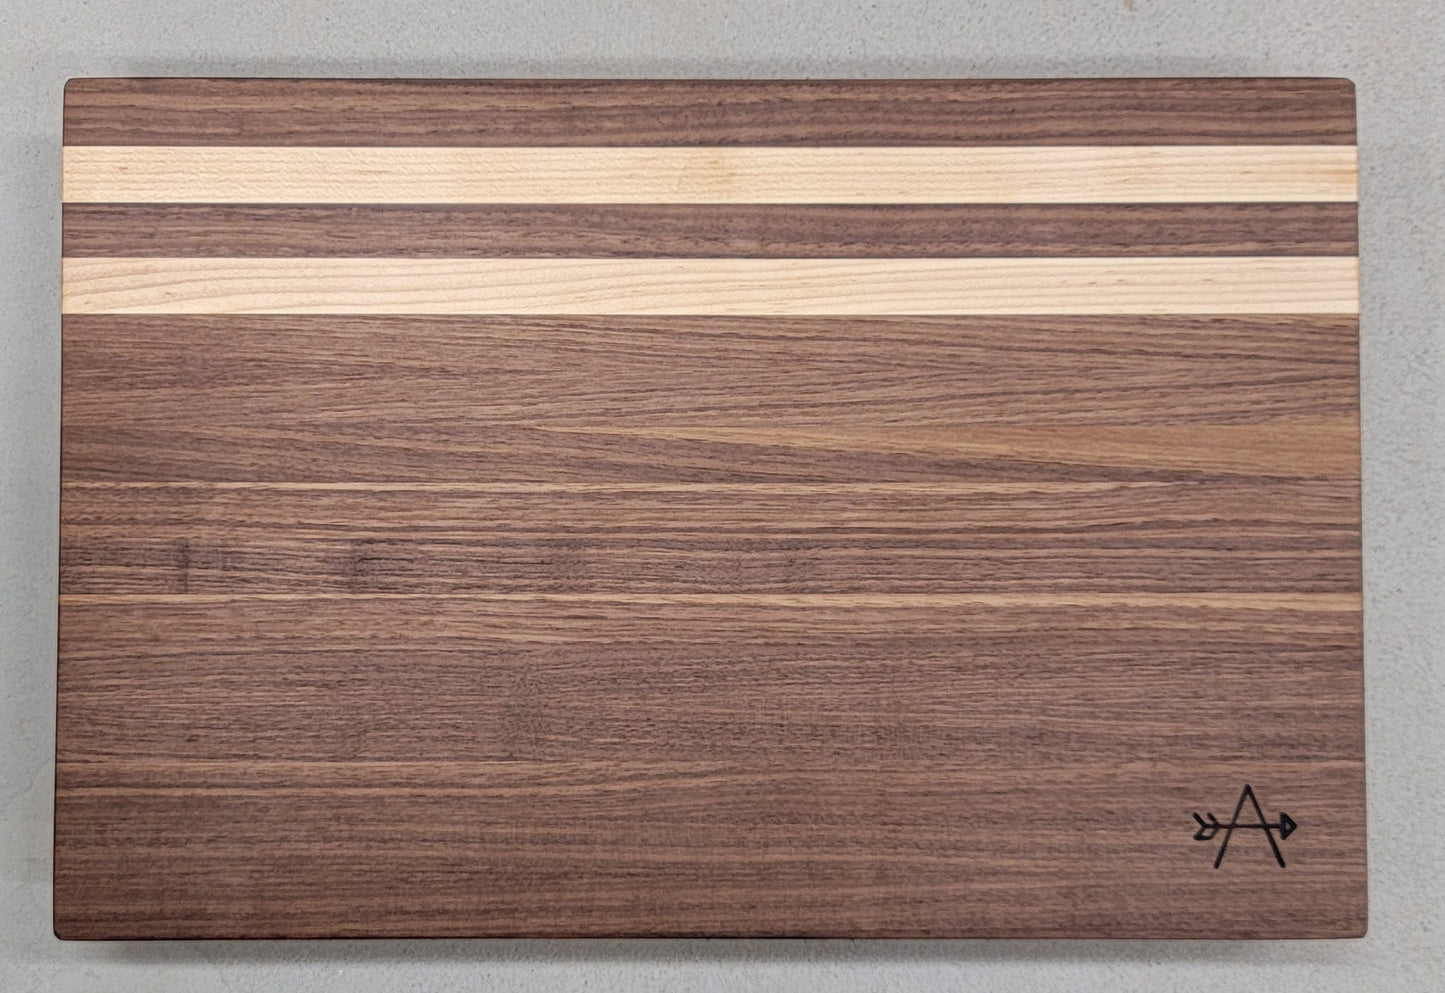 Walnut and Maple Wood Cutting Board